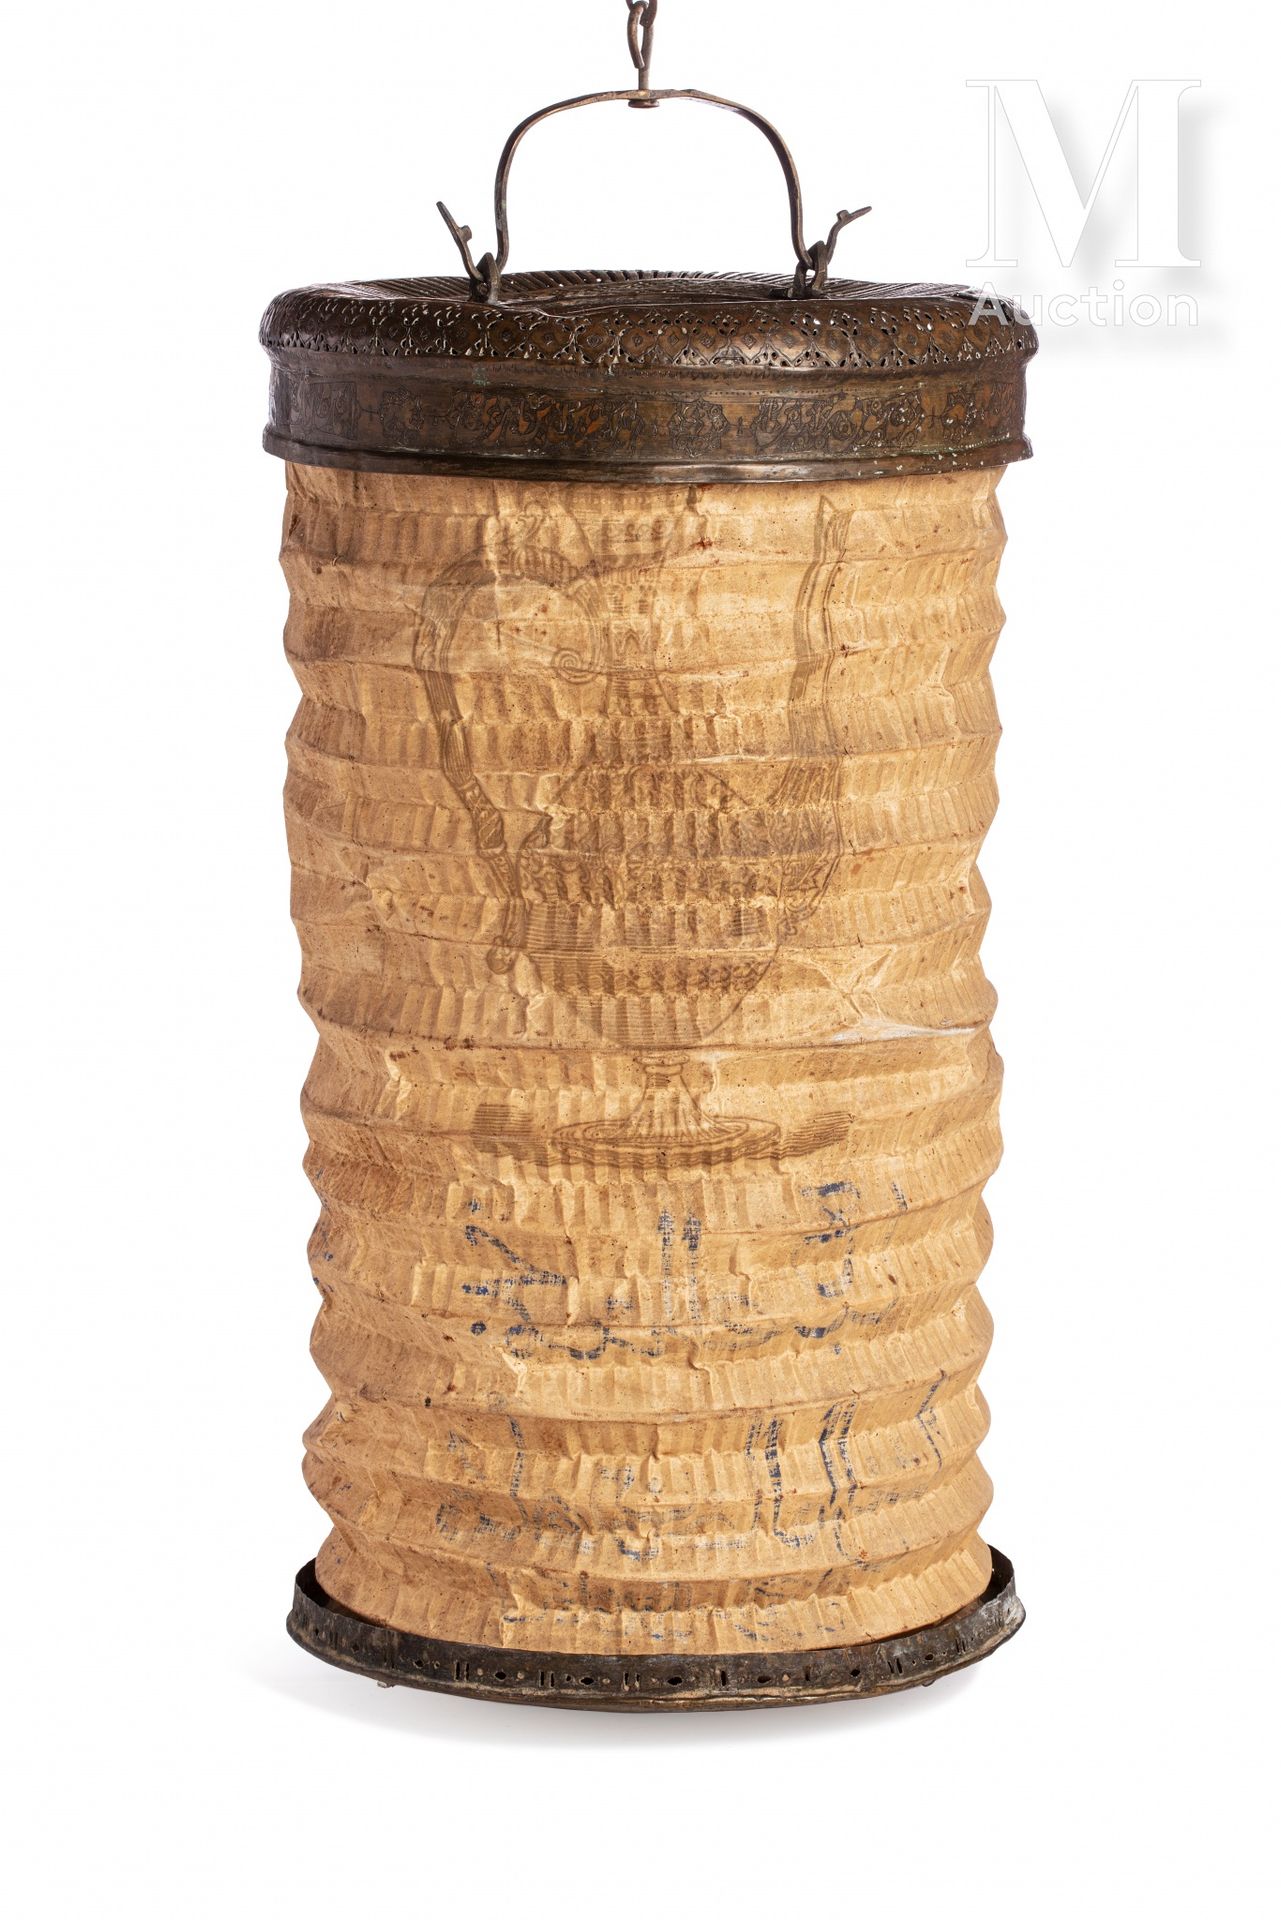 Lanterne à main - Fener Art ottoman ou qajar, XIXe siècle

Cuivre ajouré et cise&hellip;